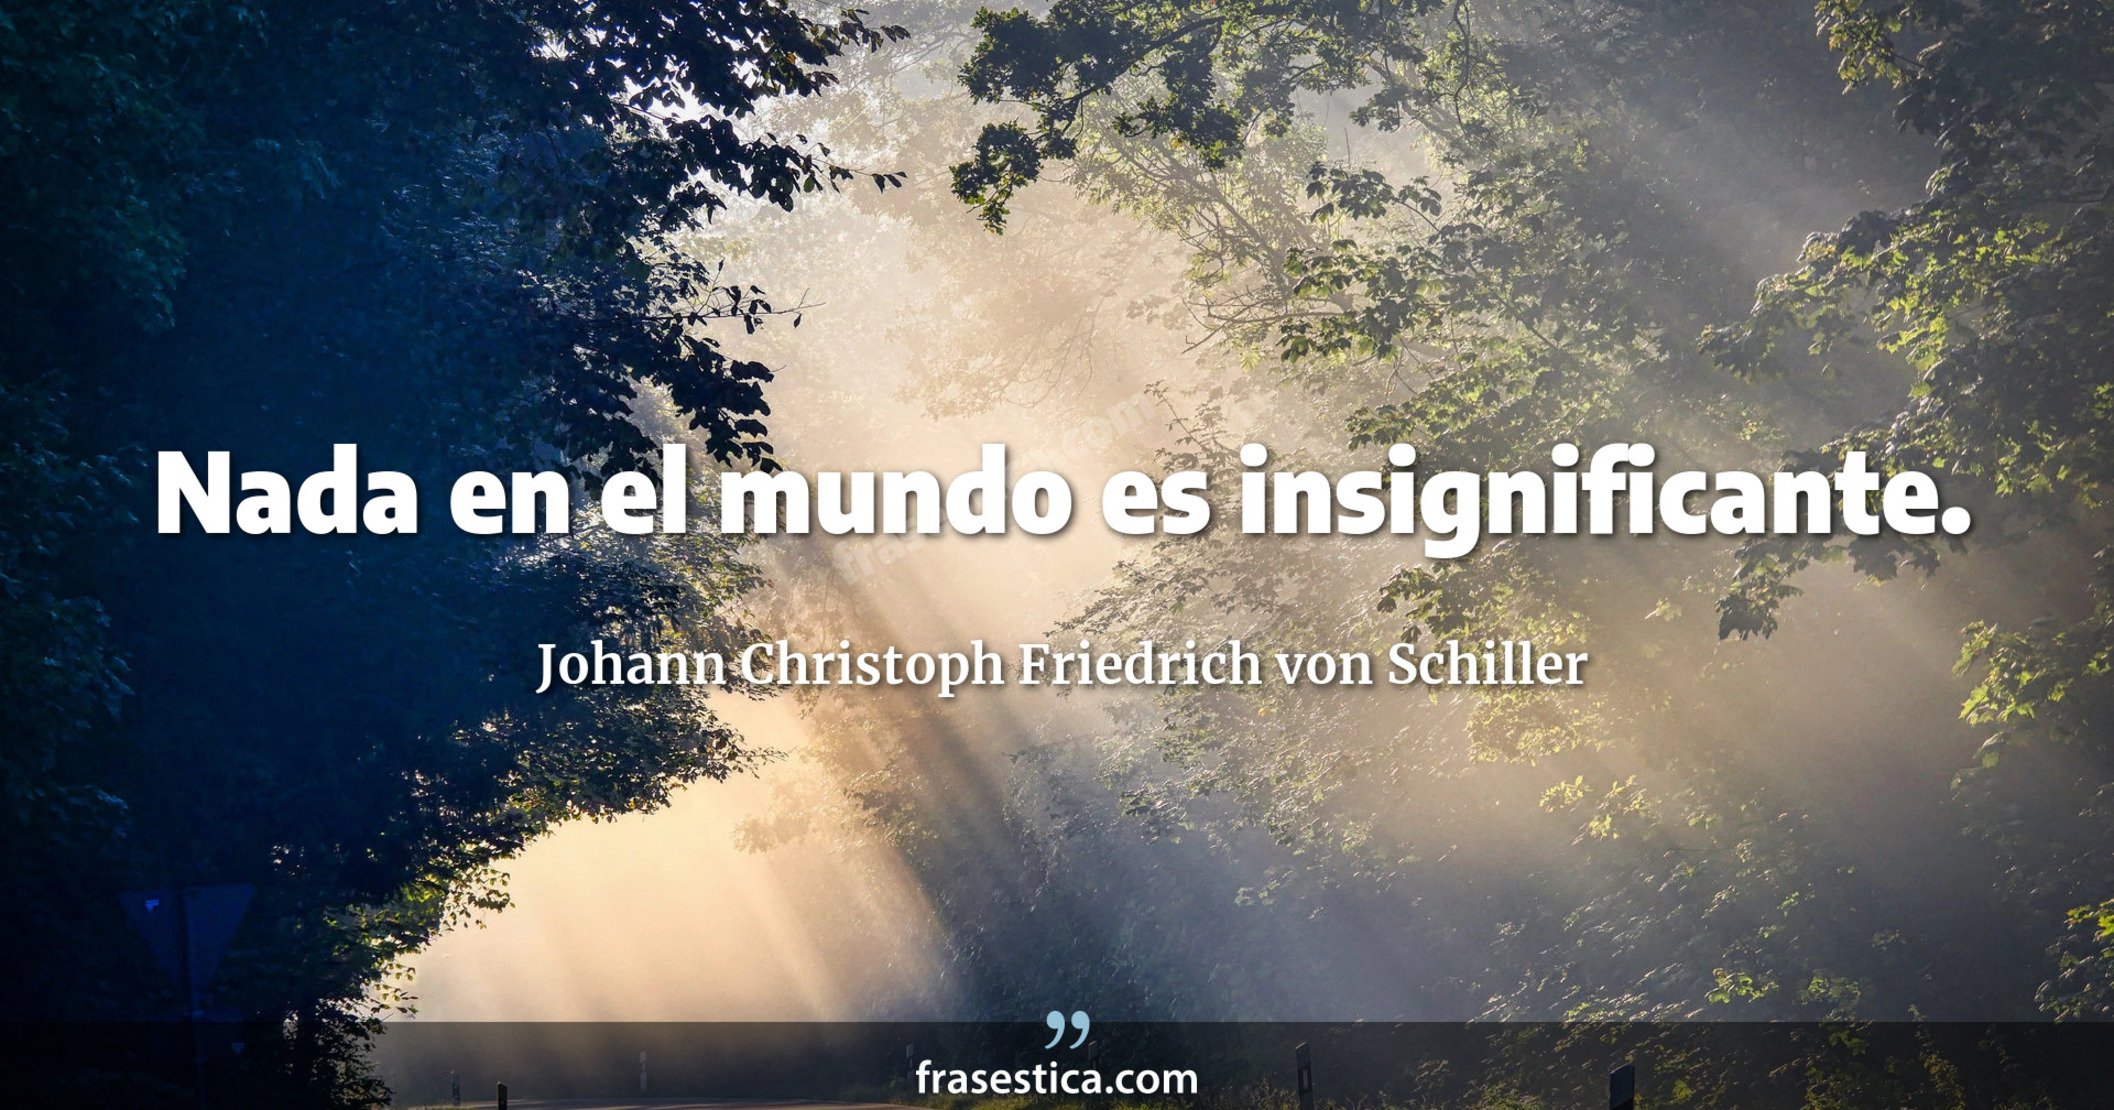 Nada en el mundo es insignificante. - Johann Christoph Friedrich von Schiller